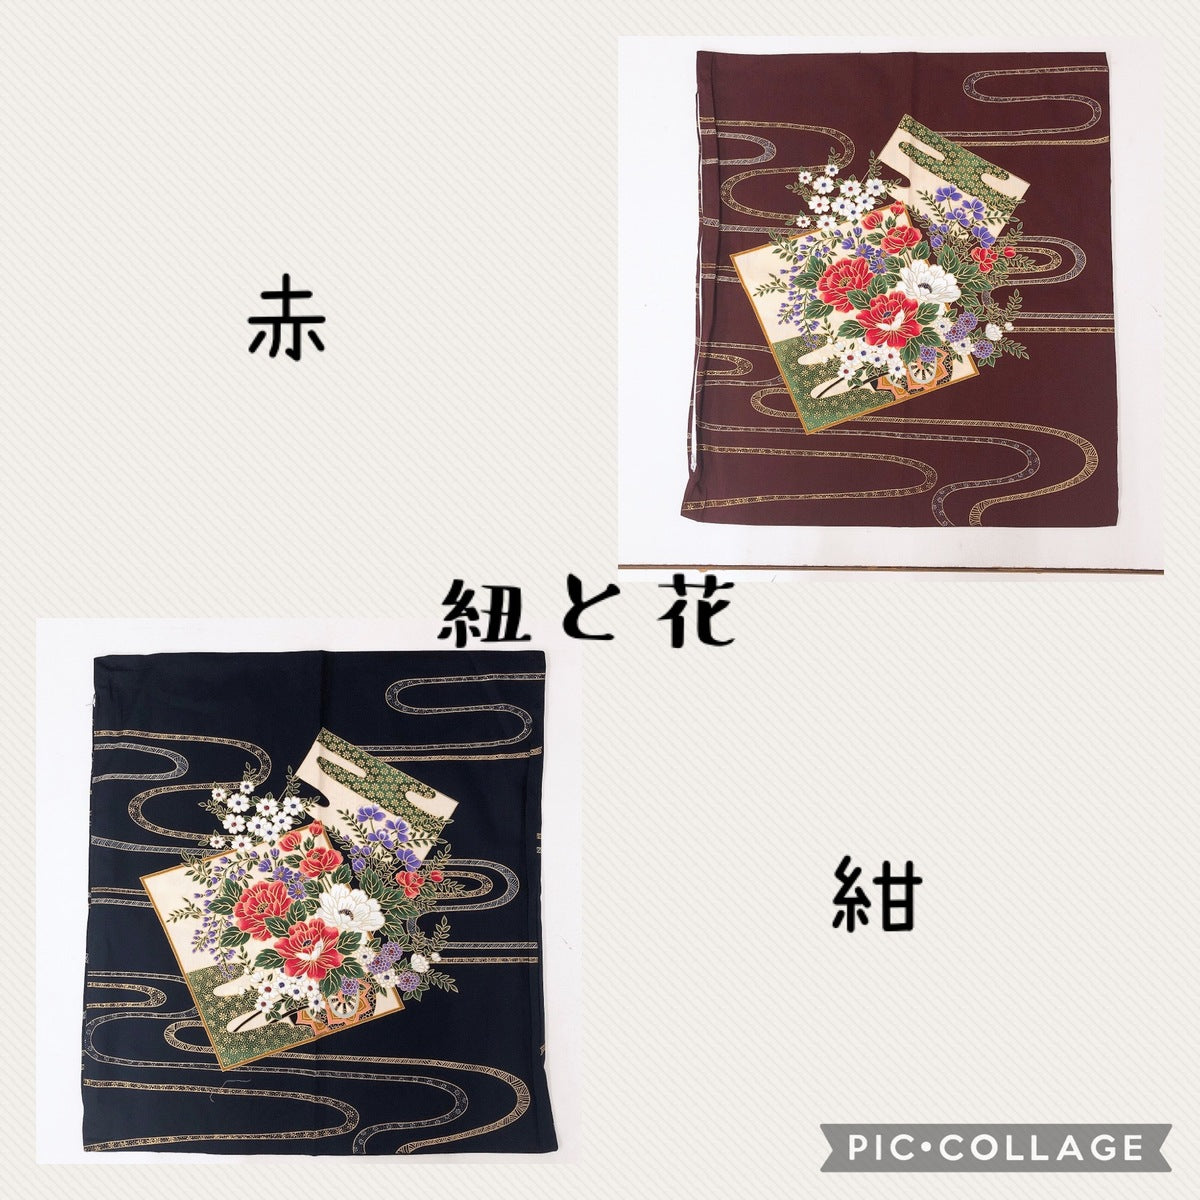 【5枚組】日本製座布団カバー 55×59cm和柄銘仙判綿100%zw55-5（レッド）